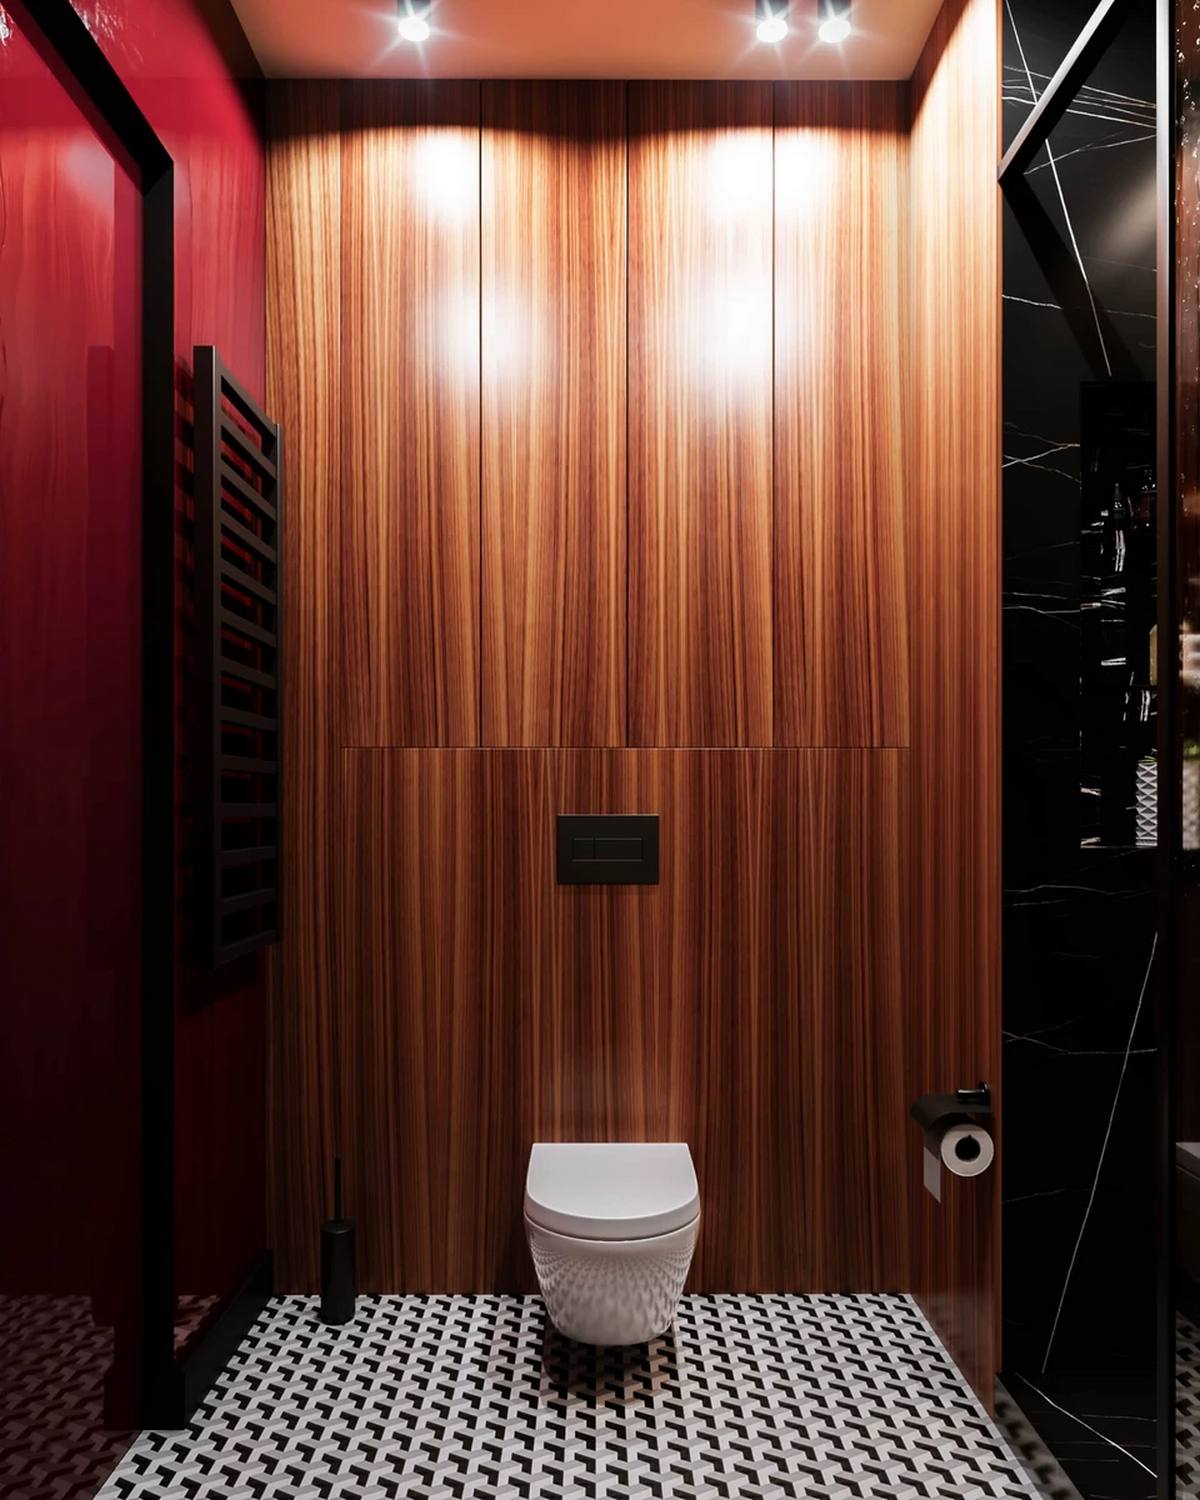 Phòng vệ sinh và phòng tắm có thiết kế cực kỳ đơn giản nhưng lại sang chảnh chỉ nhờ màu sắc. Cánh cửa màu đỏ, tường ốp gỗ vân sọc tương đồng với lối ra vào và phòng bếp, một góc kệ lưu trữ màu đèn và nổi bật là gạch lát sàn trắng - đen hút mắt.